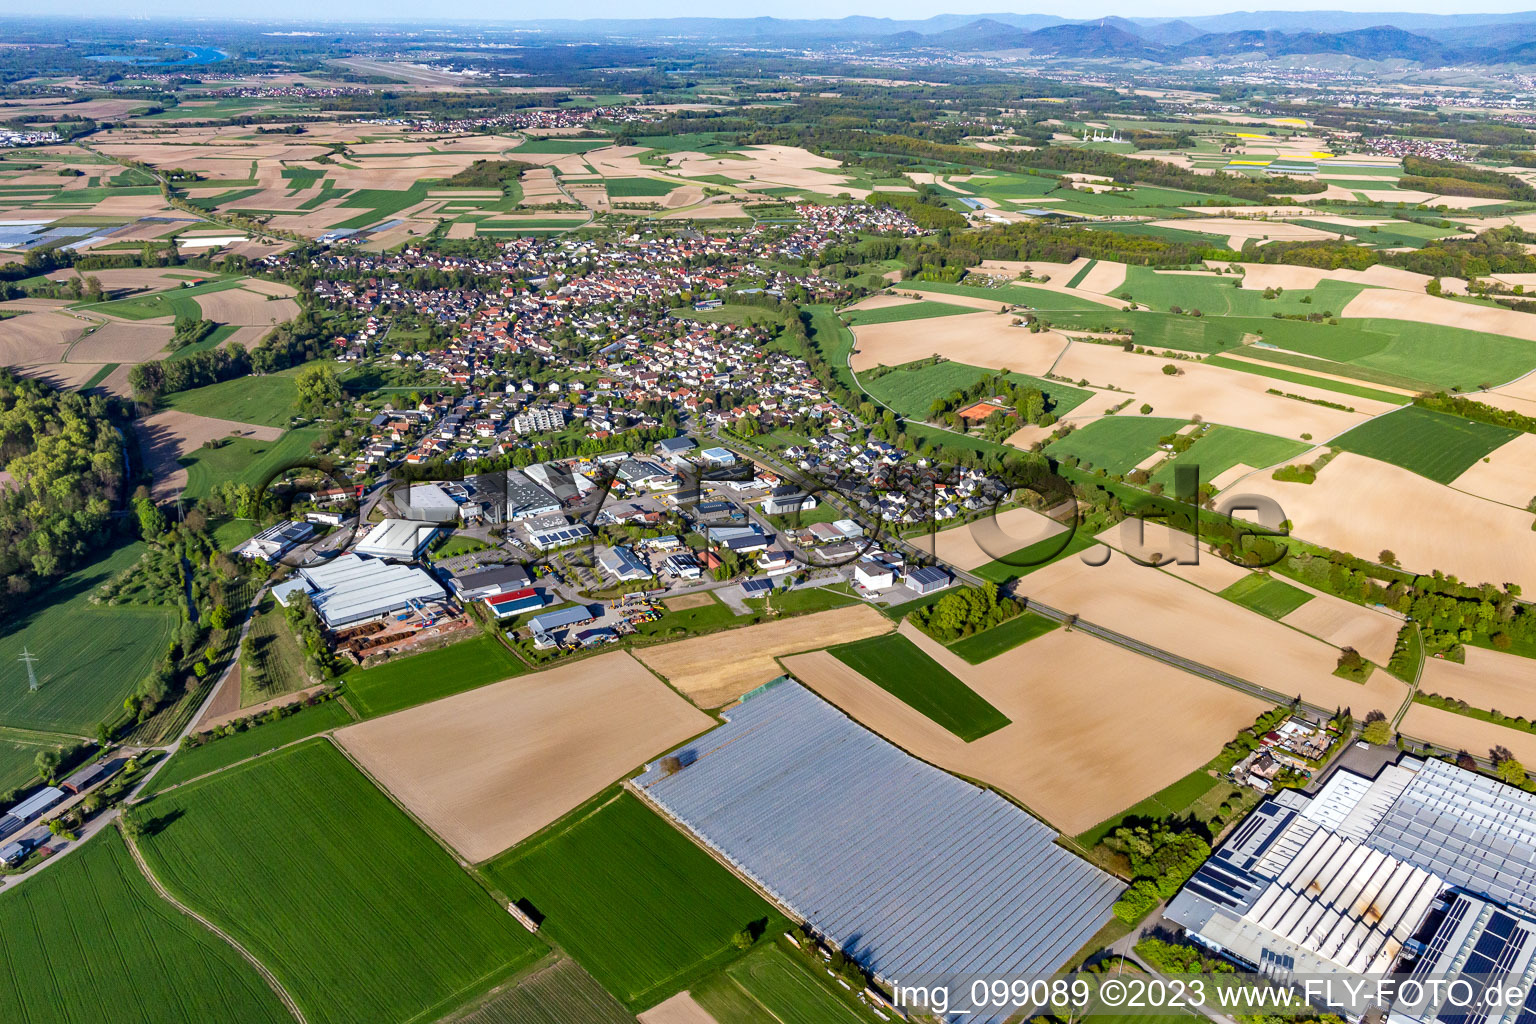 Luftbild von Ortsteil Scherzheim in Lichtenau im Bundesland Baden-Württemberg, Deutschland